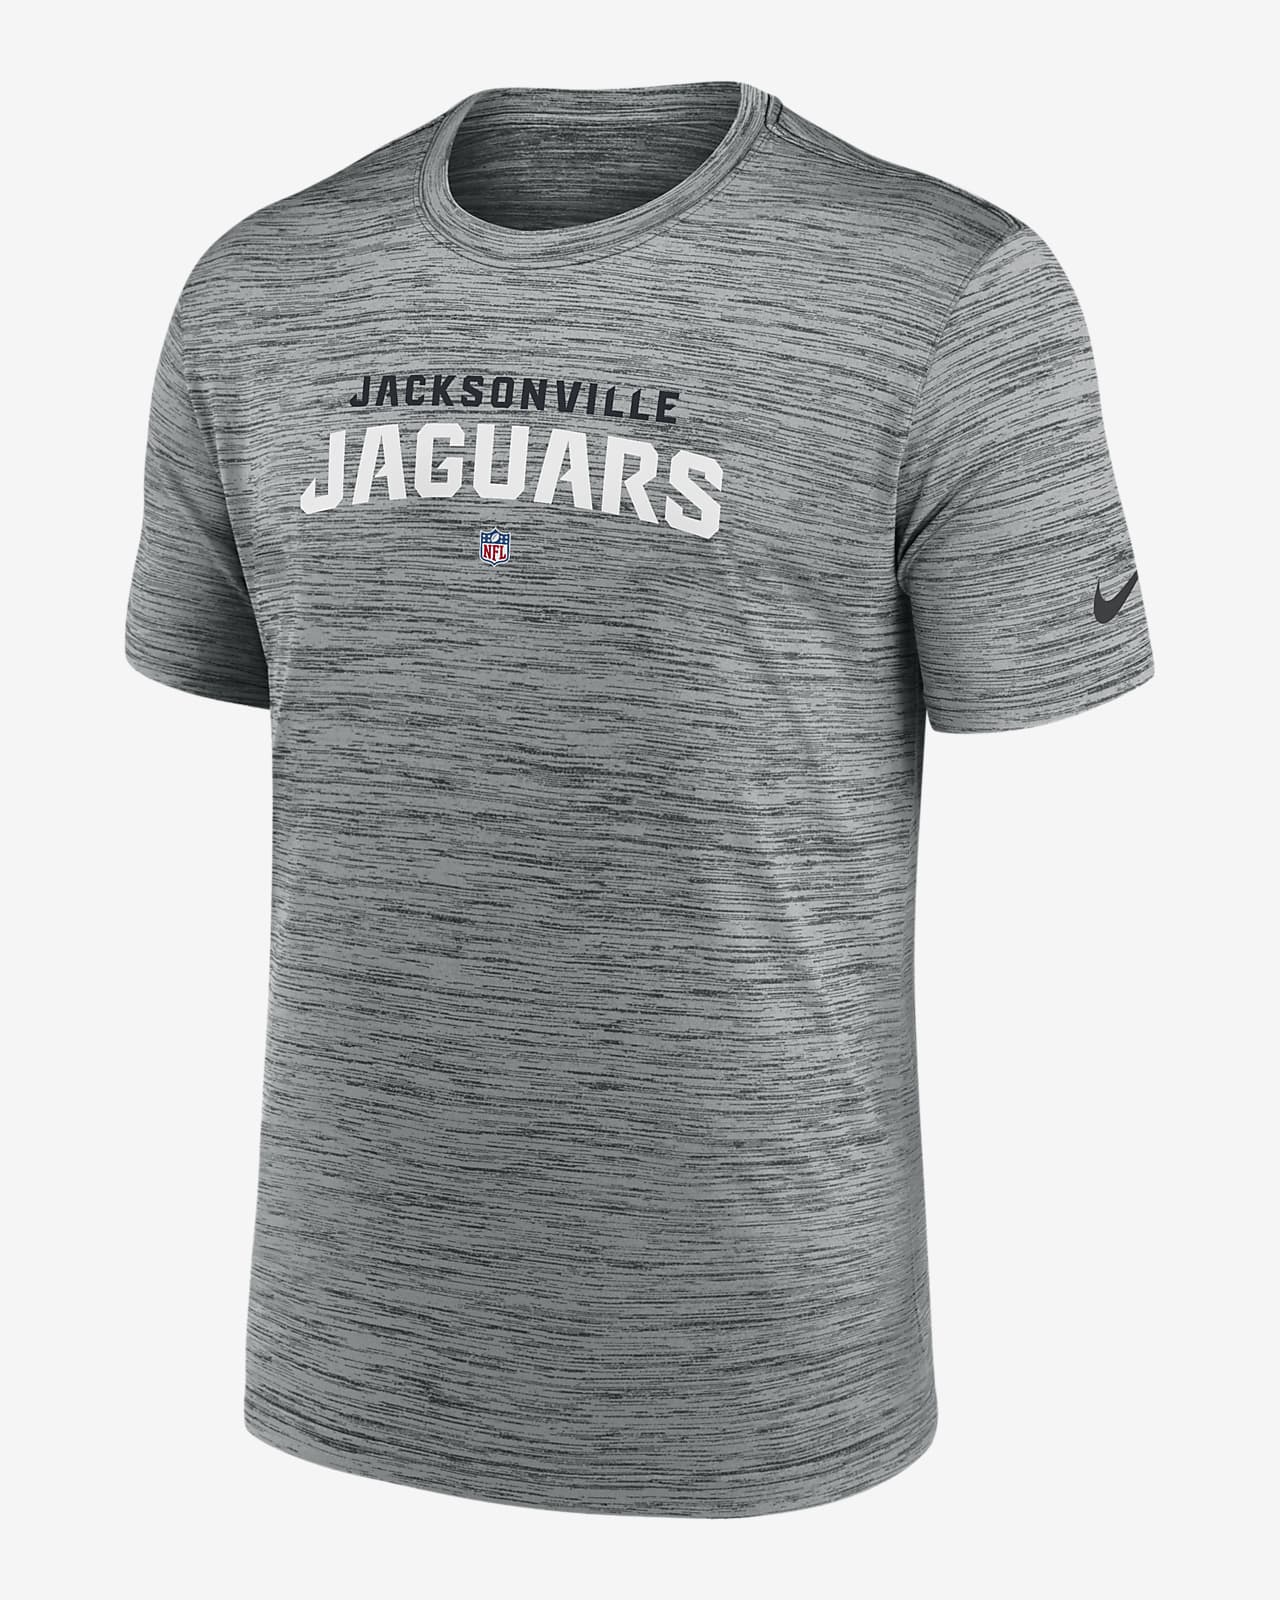 jacksonville jaguars nike shirt